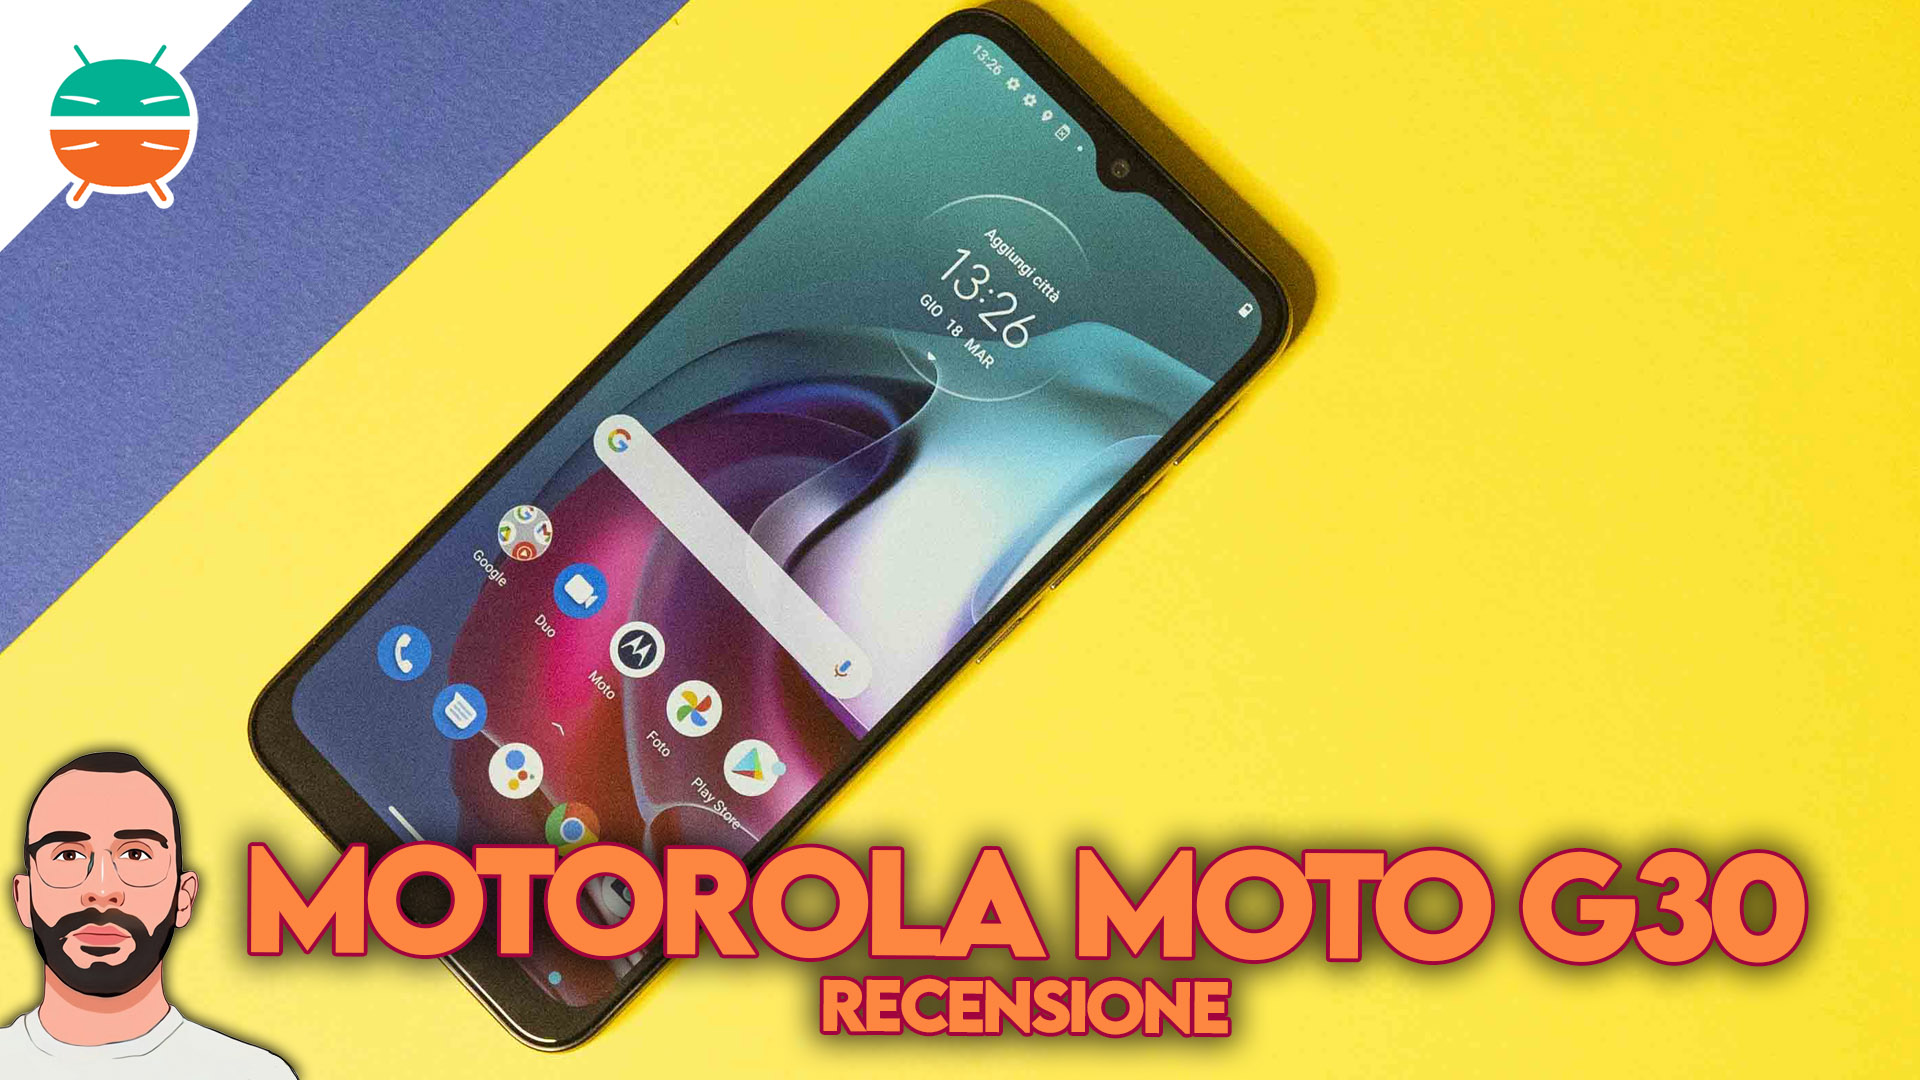 Recensione-Motorola-G30-smartphone-economico-caratteristiche-display-prestazioni-fotocamera-prezzo-offerta-coupon-italia-copertina